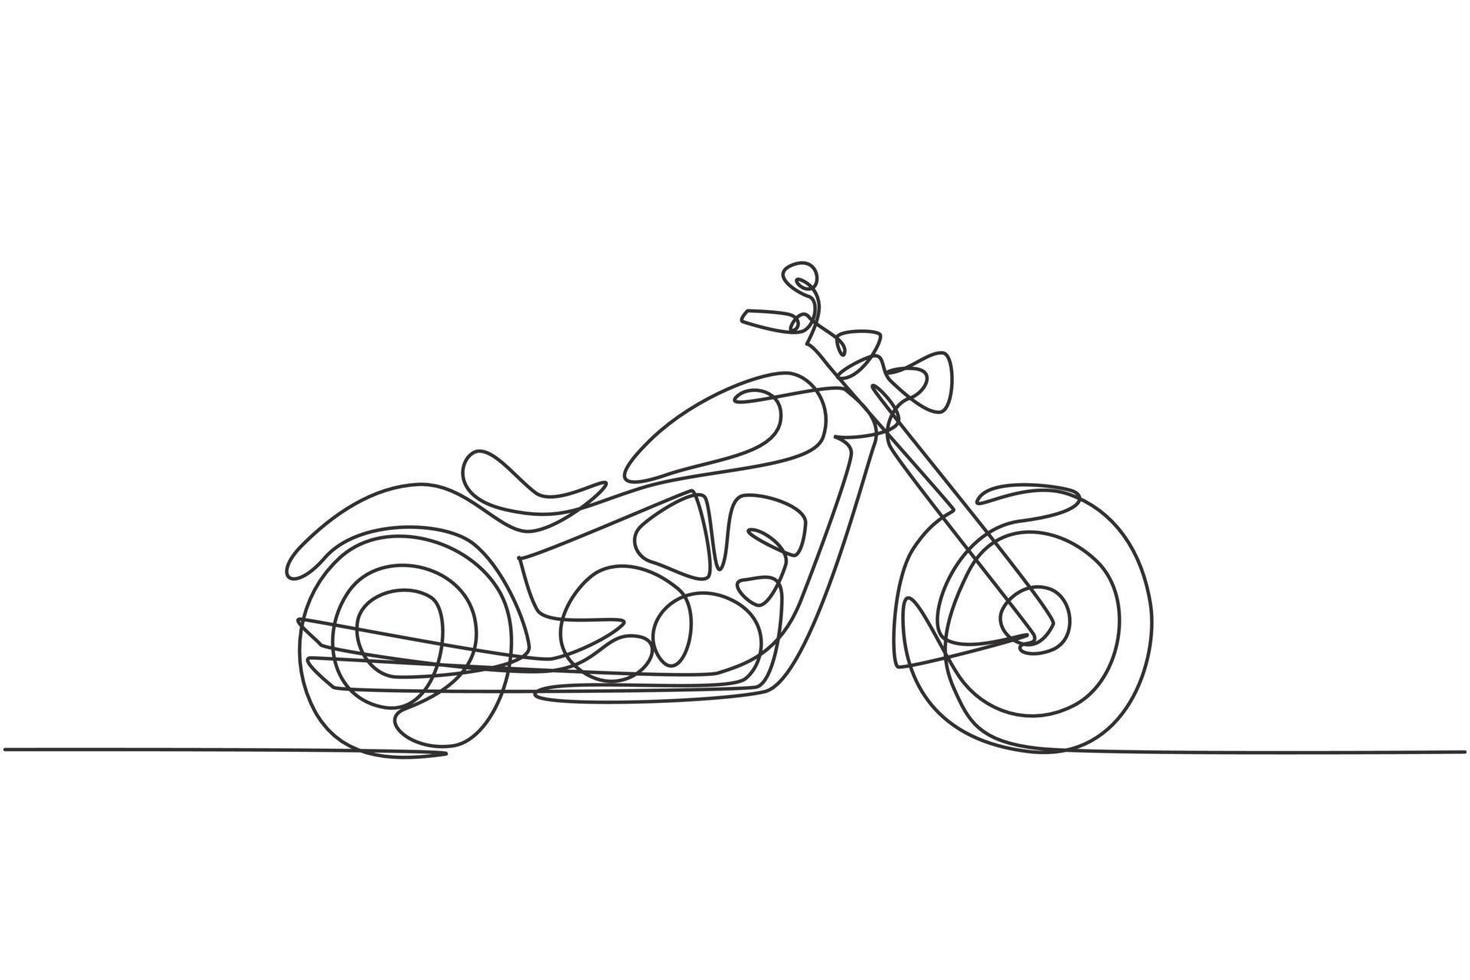 Eine einzige Strichzeichnung des alten Retro-Vintage-Motorrads. Vintage-Motorrad-Transportkonzept kontinuierliche Linie zeichnen Design-Vektor-Illustration-Grafik vektor